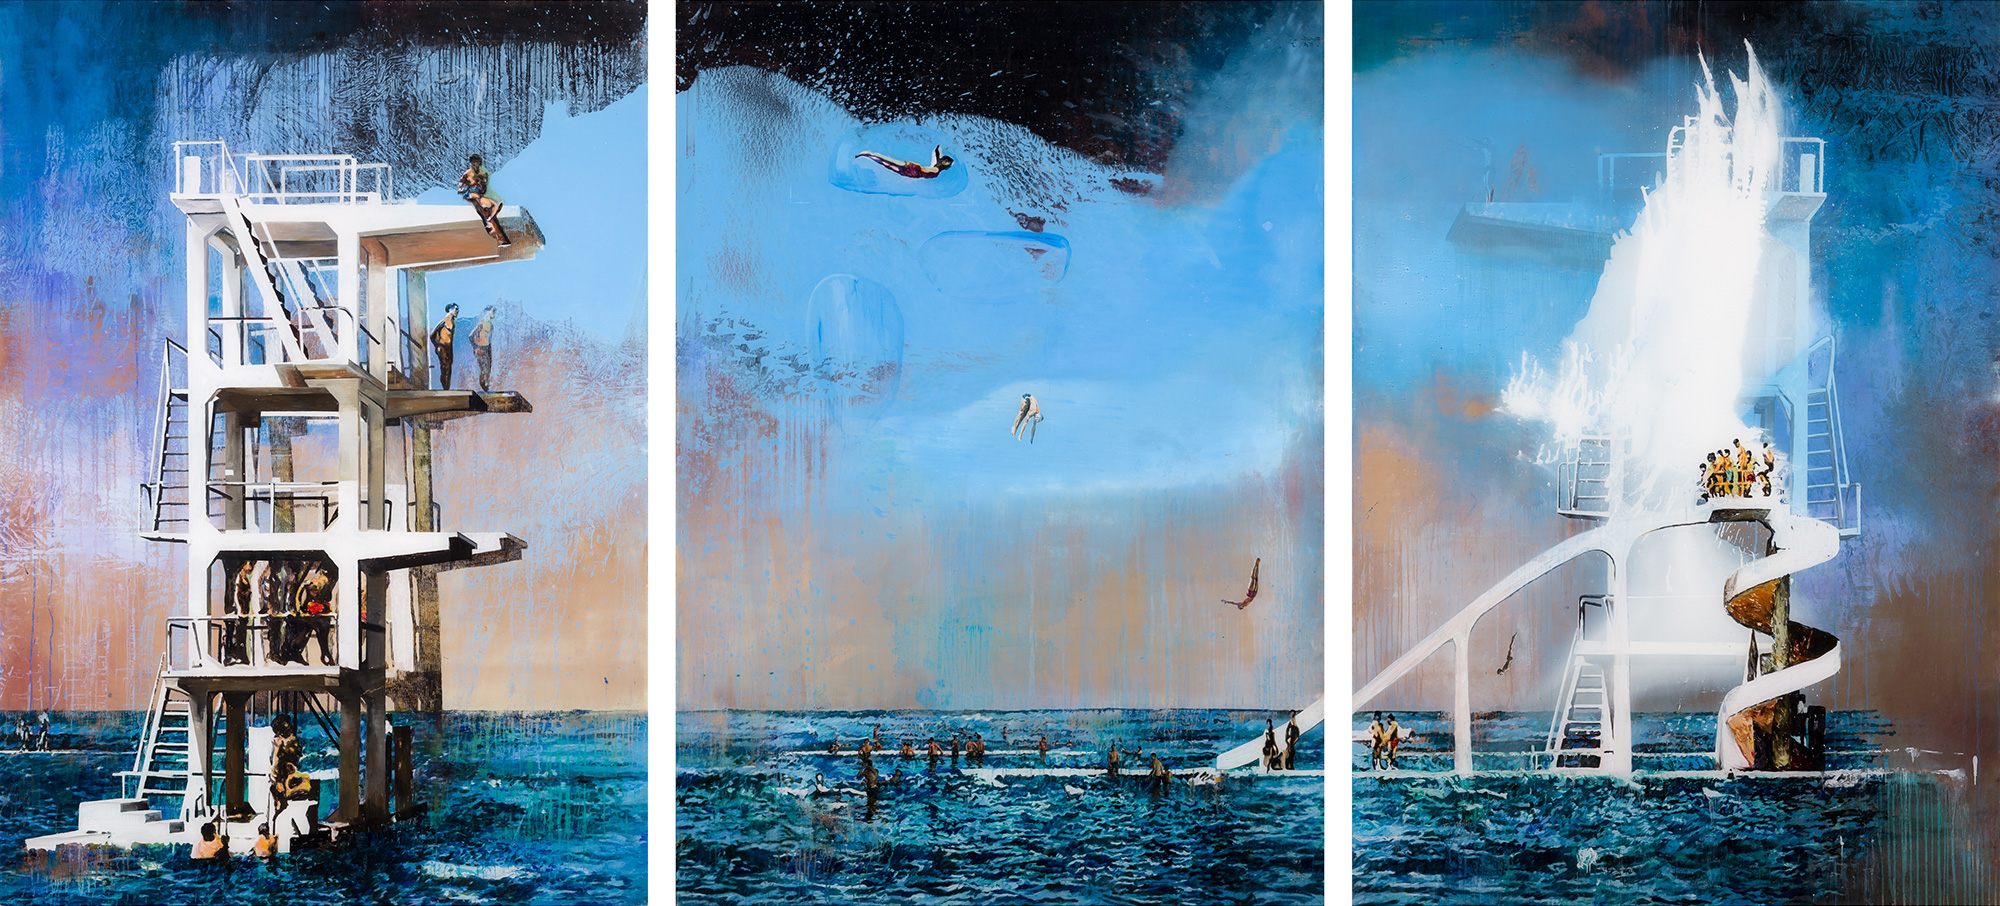 The-Flight-2013-oil-on-plexiglass-210X450cm-triptych